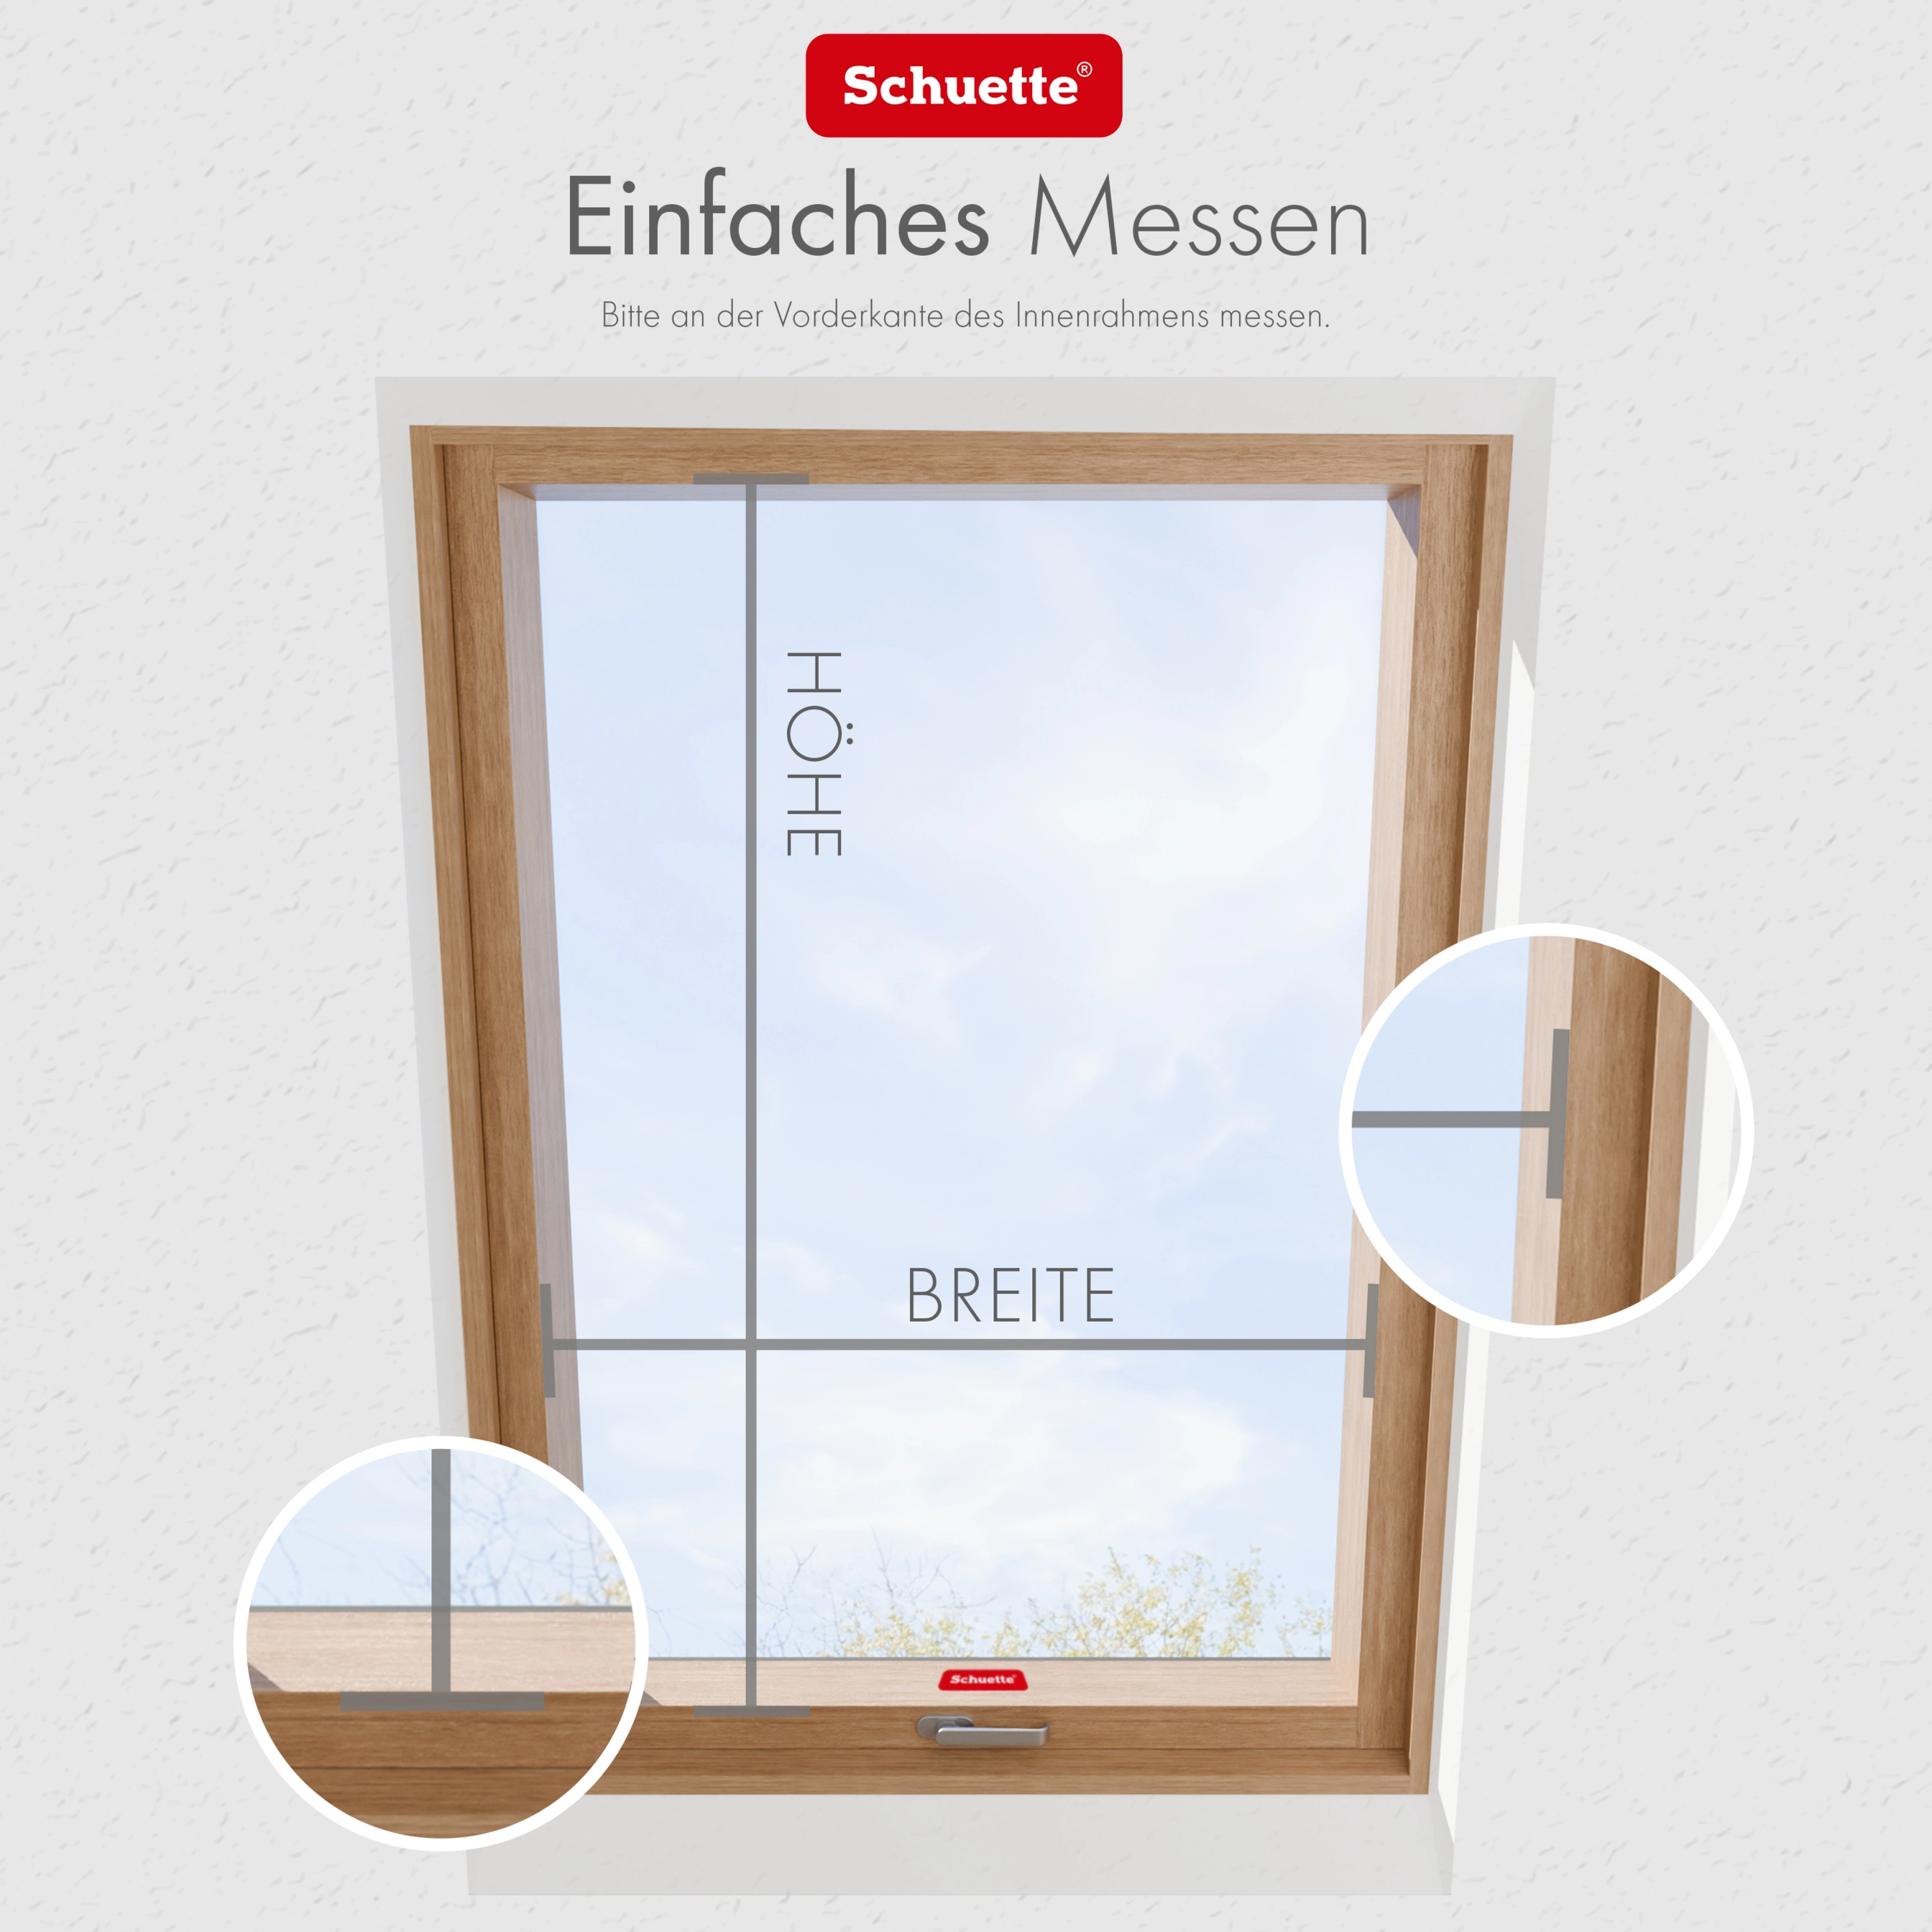 Schuette® Dachfenster Plissee nach Maß • Thermo Kollektion: Tide Tune (Türkis) • Profilfarbe: Weiß